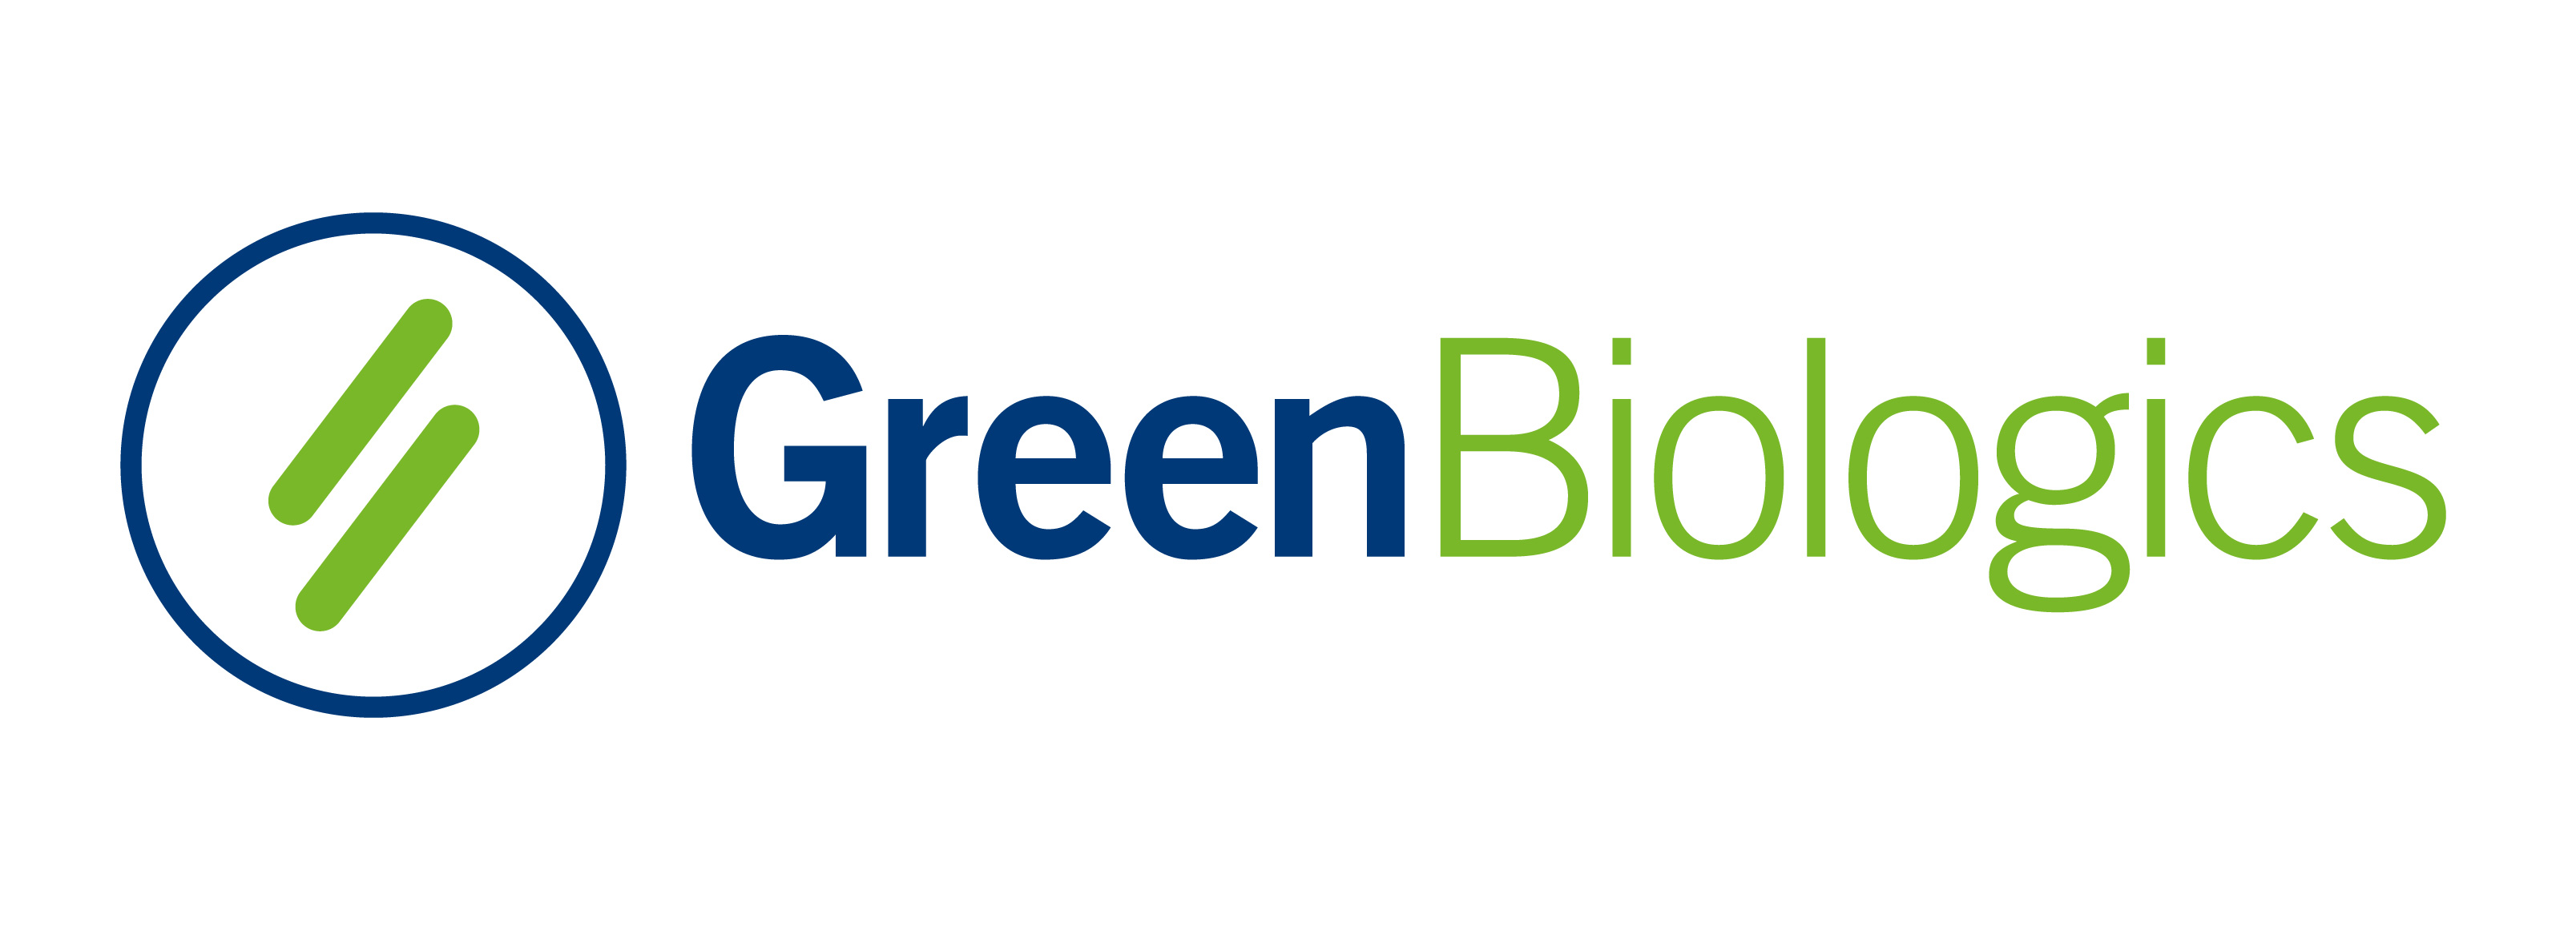 Partner - Green Biologics